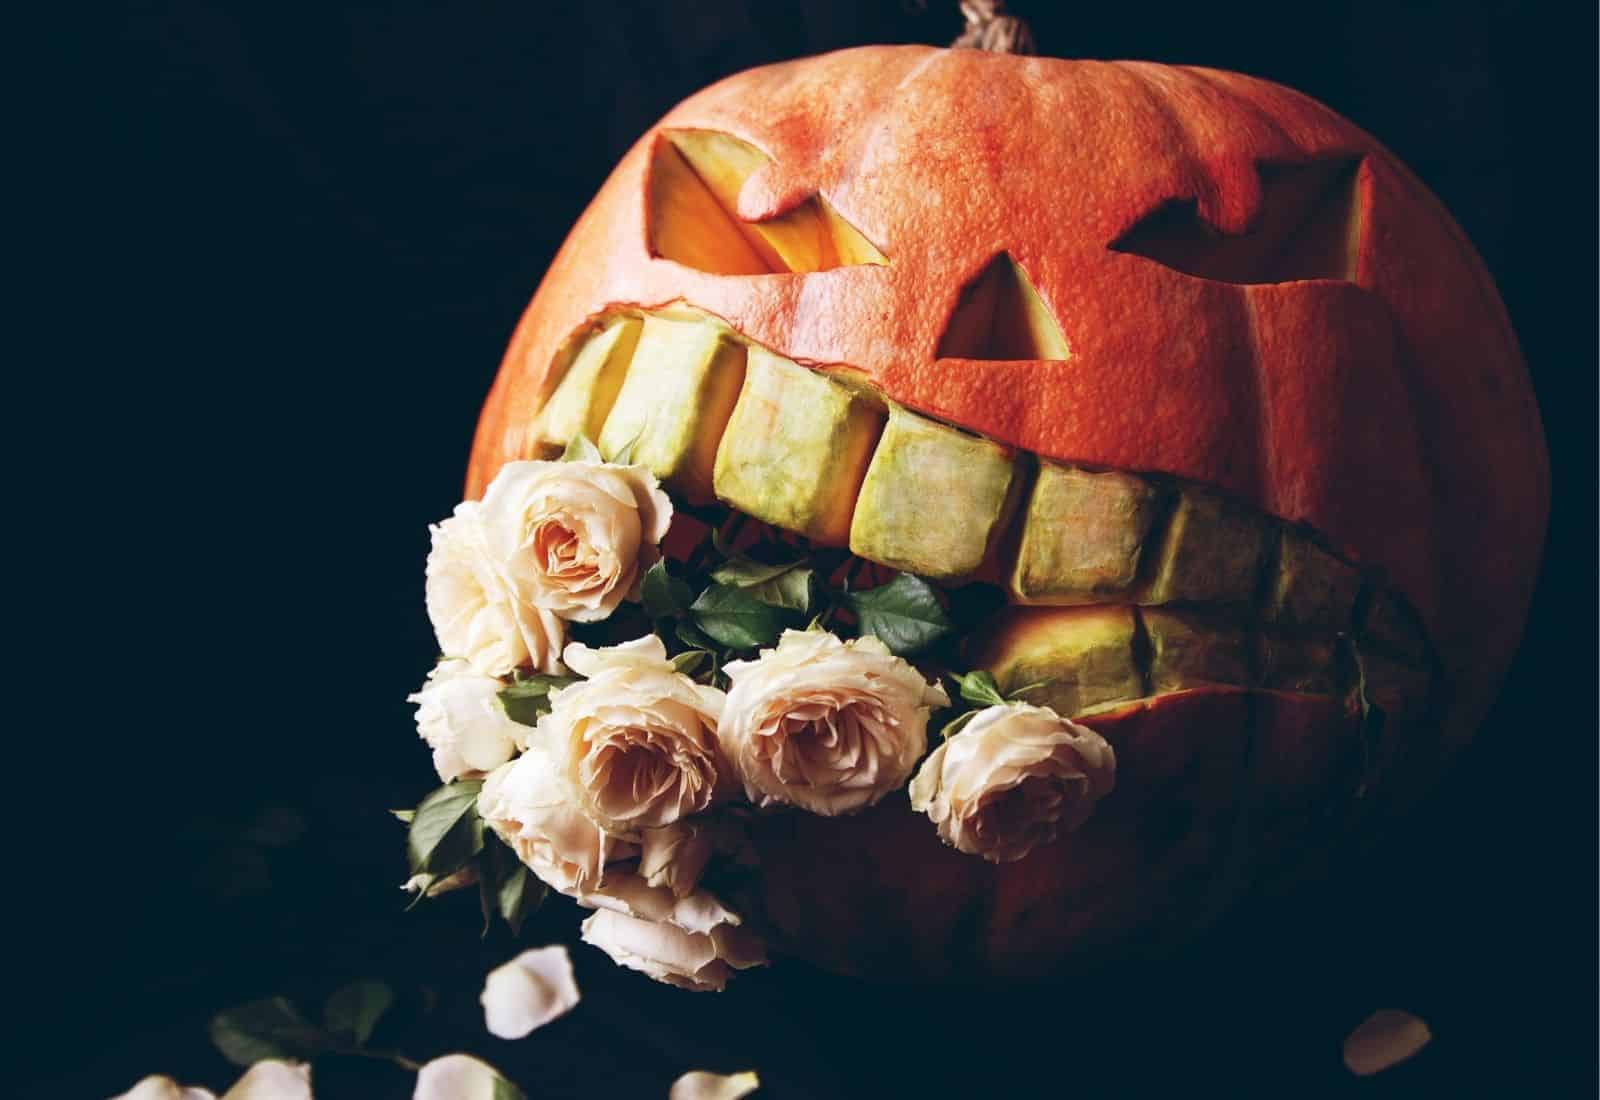 Pumpkin with big teeth eating flowers